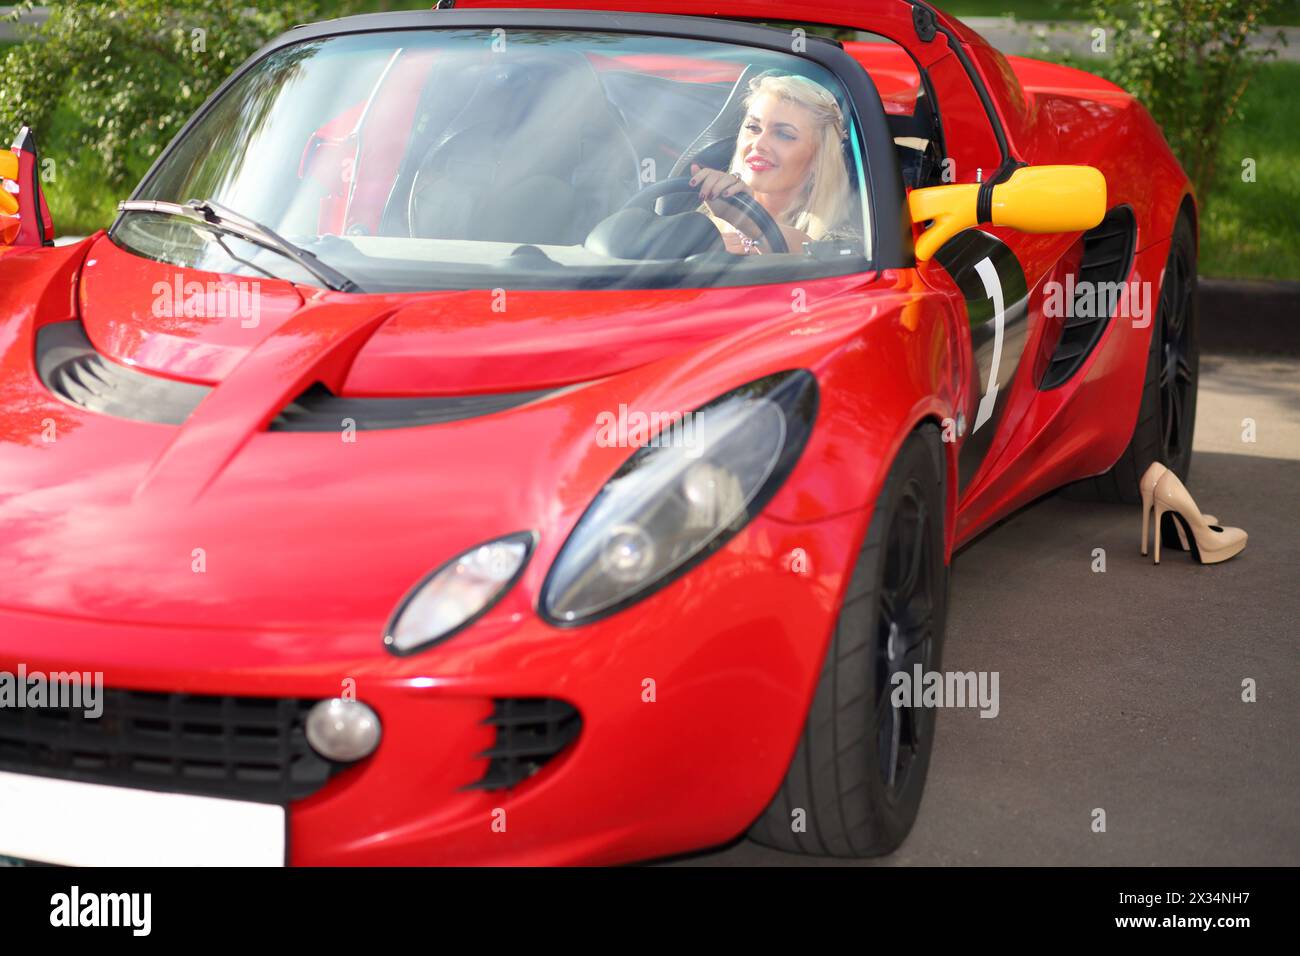 MOSKAU - 13. September 2015: Blonde Frau (mit Modellfreigabe) sitzt im Lotus-Cabriolet. Lotus Cars ist ein britischer Hersteller von Sport- und Rennwagen Stockfoto